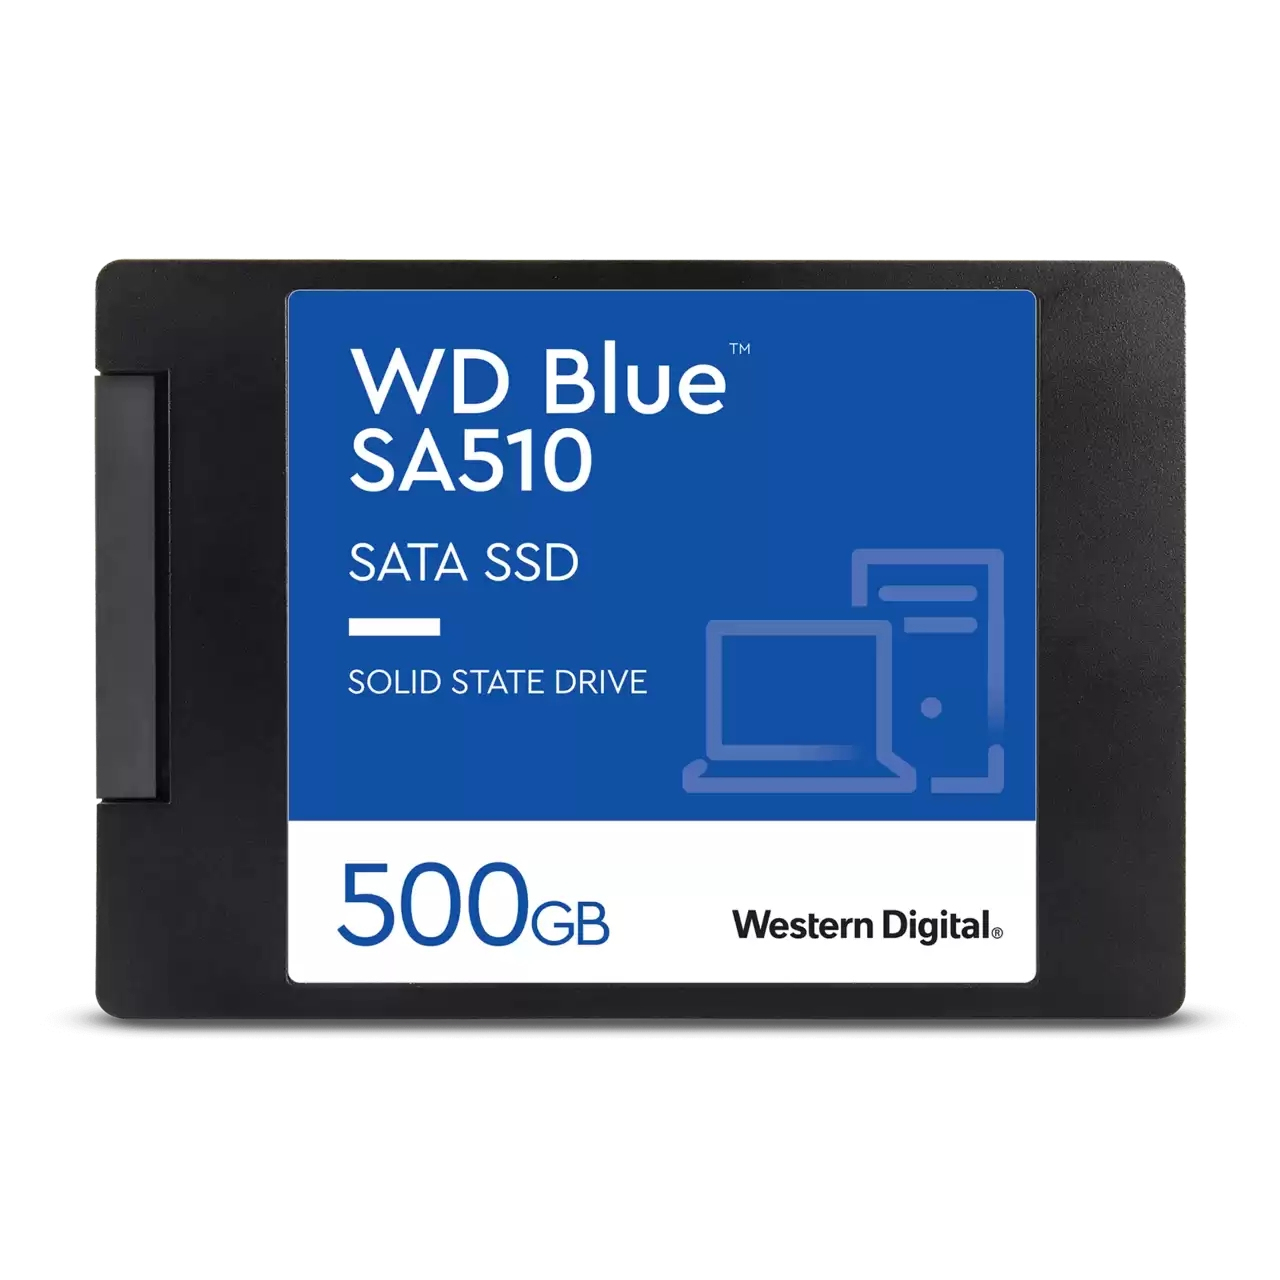 Kelder Trouw strottenhoofd Western Digital Blue SA510 (WDS500G3B0A) kopen » Centralpoint